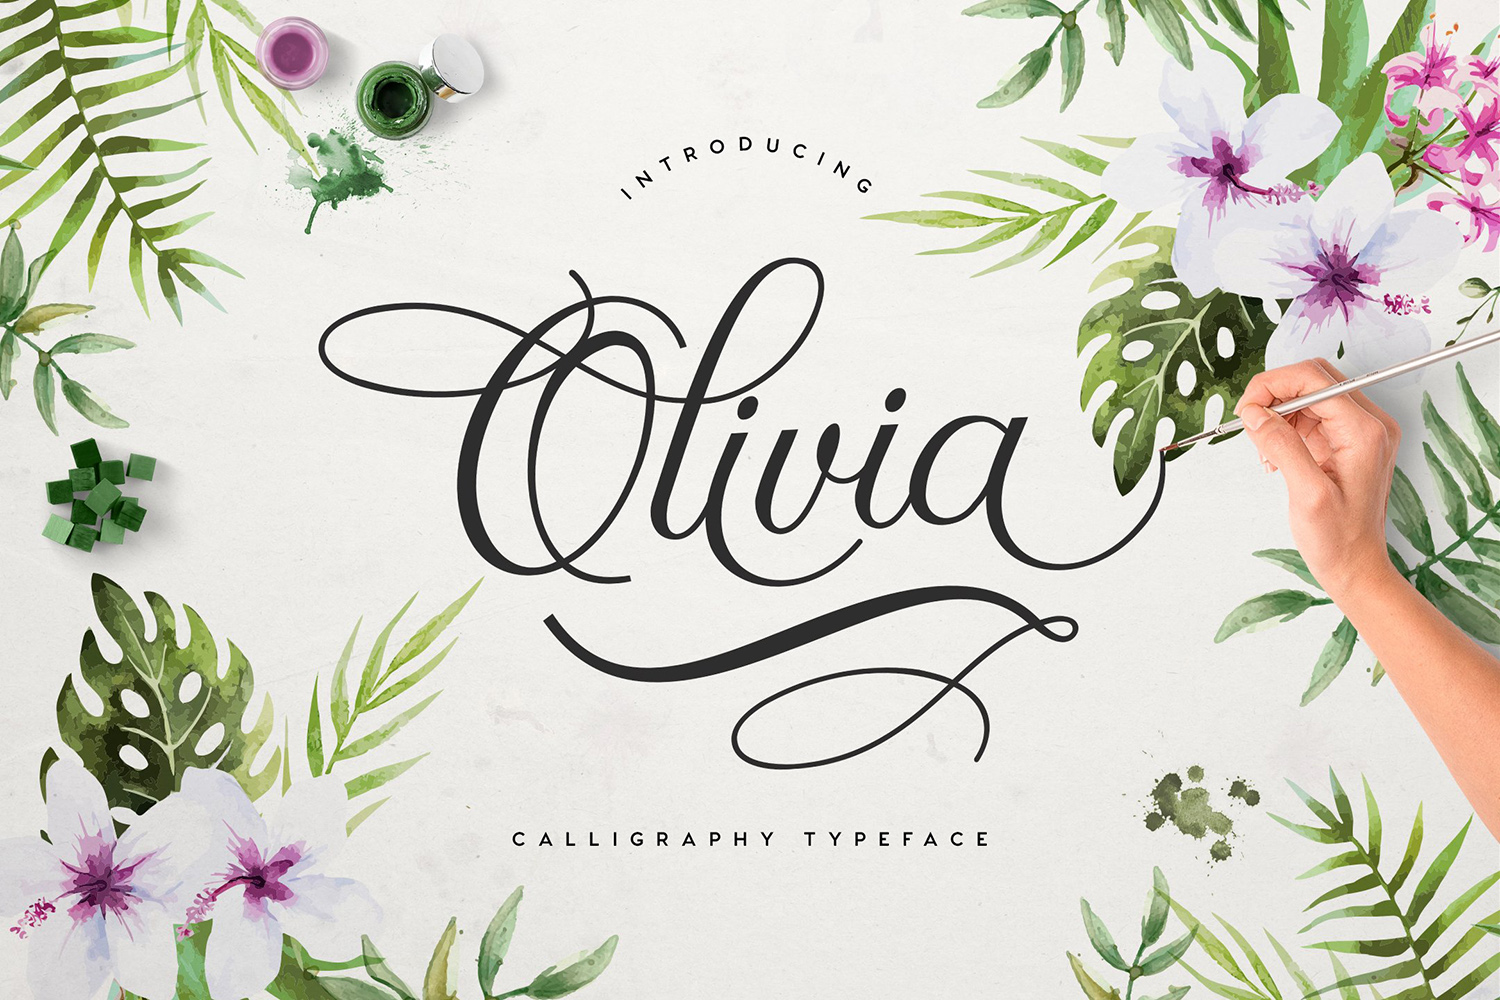 Olivia Free Font